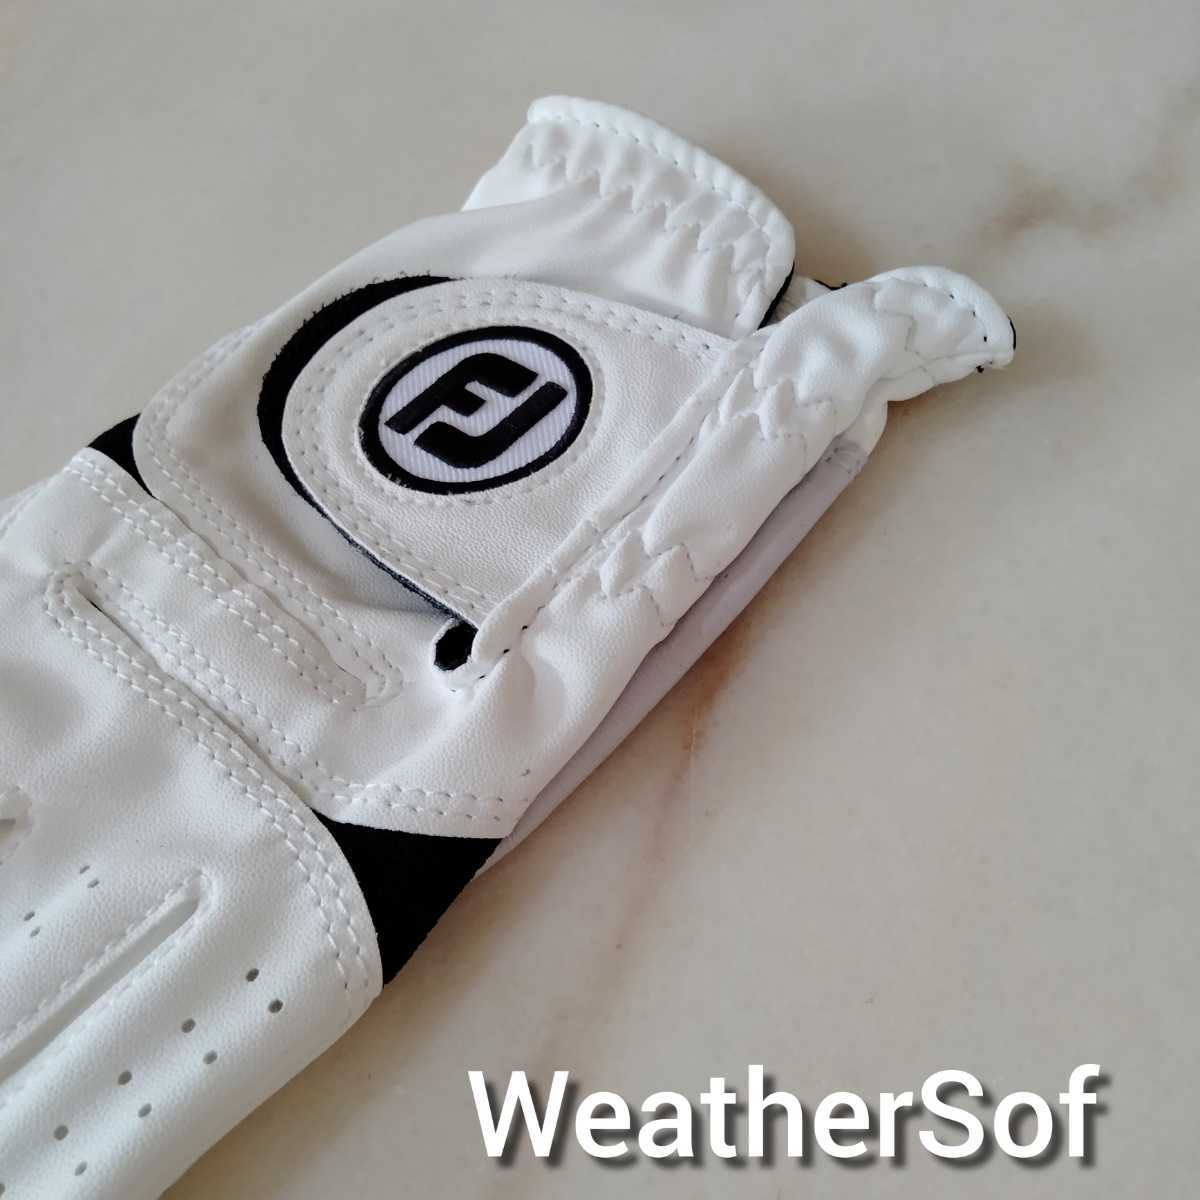 Fj weather sof23cm белый 4 шт. комплект foot Joy Golf перчатка ue The -sof новый товар бесплатный анонимность рассылка бесплатная доставка 